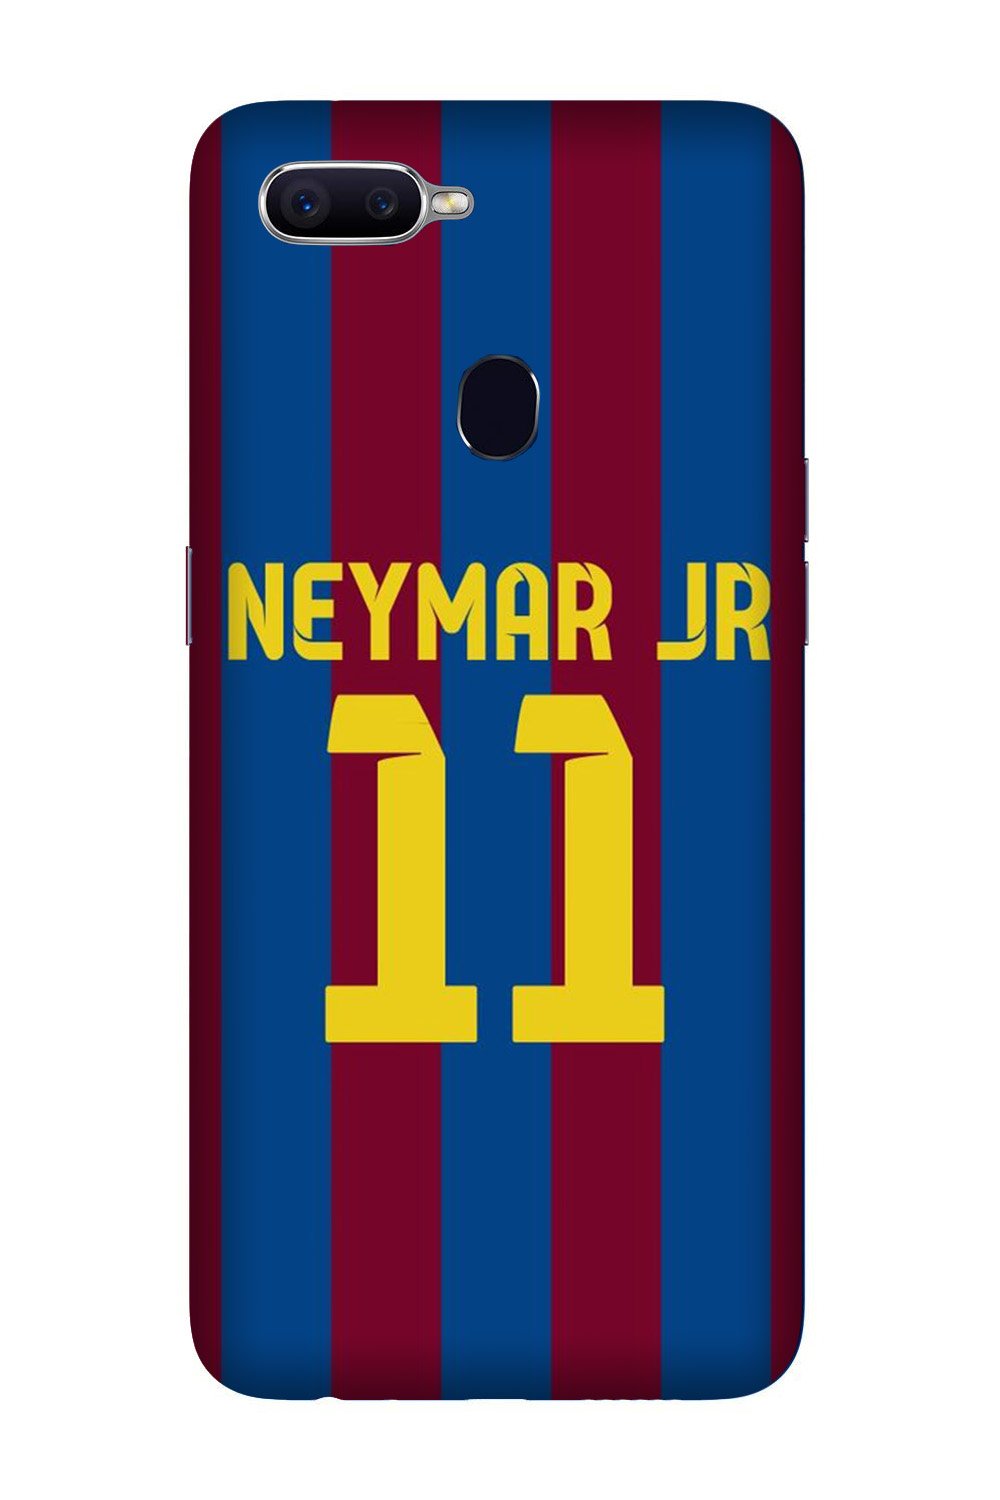 Neymar Jr Case for Oppo A5s(Design - 162)